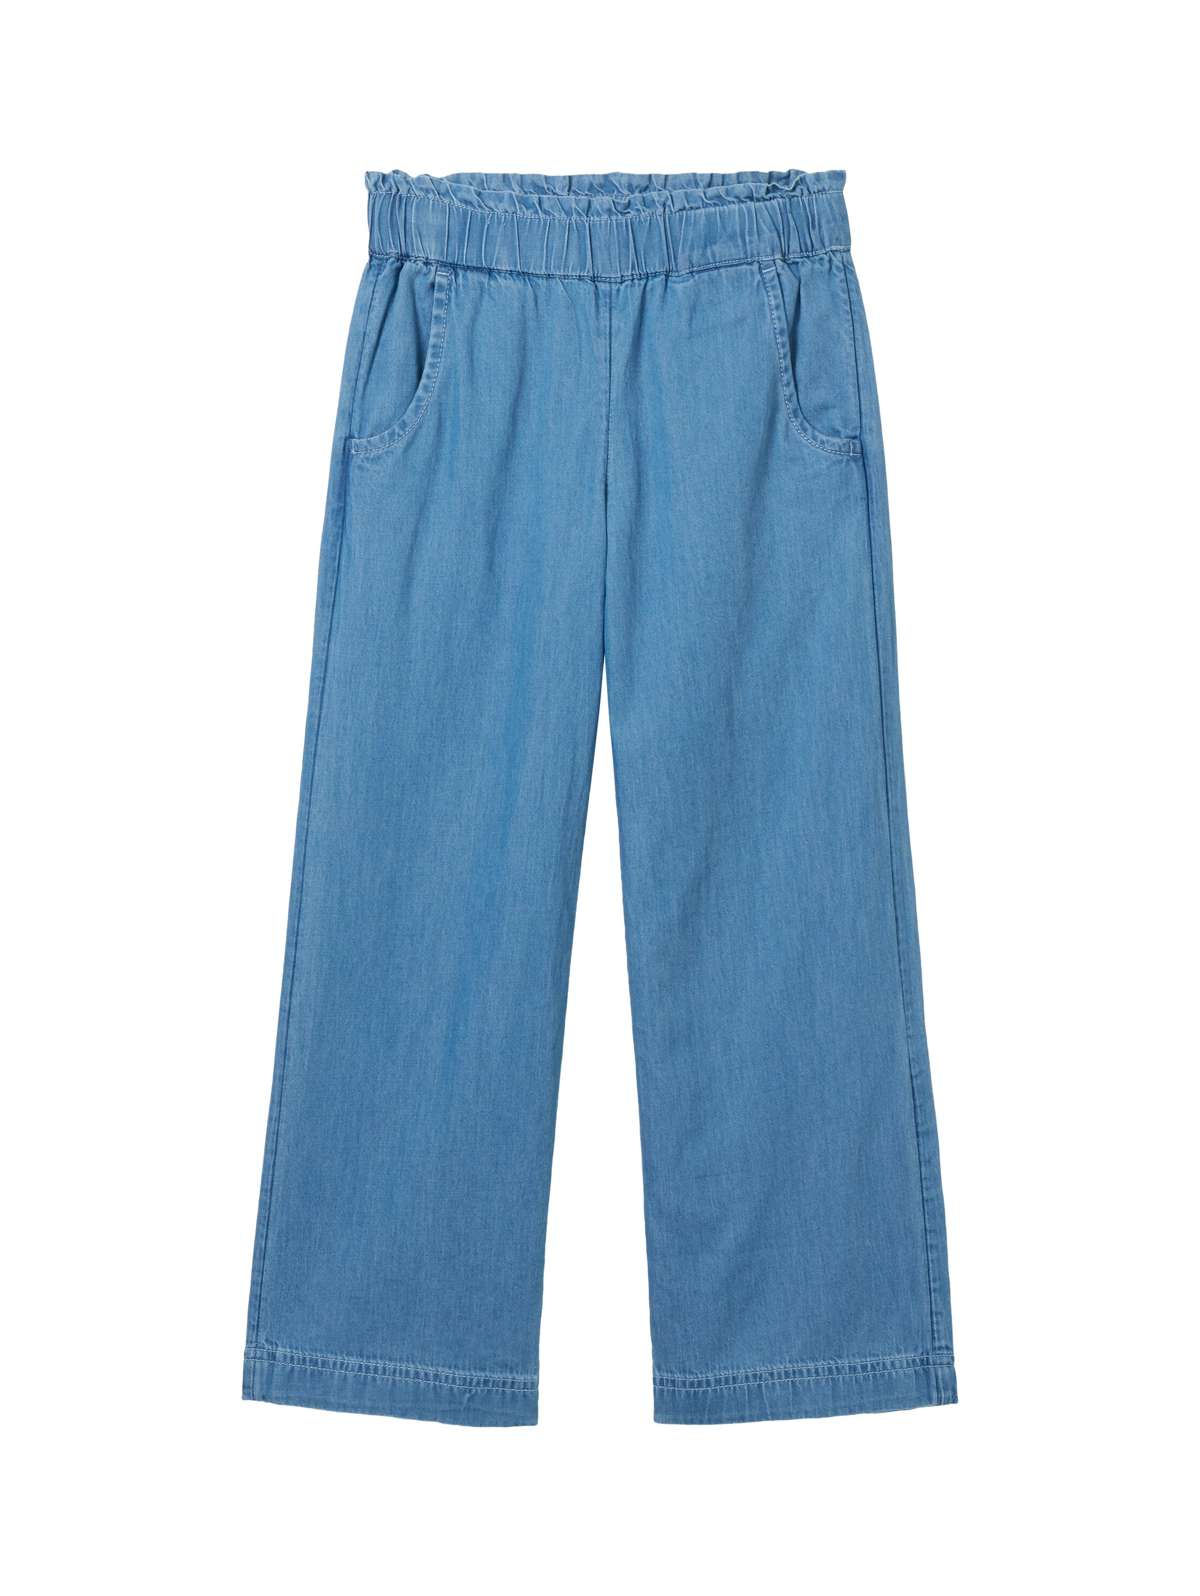 Широкие джинсы с эластичным поясом и боковыми карманами.